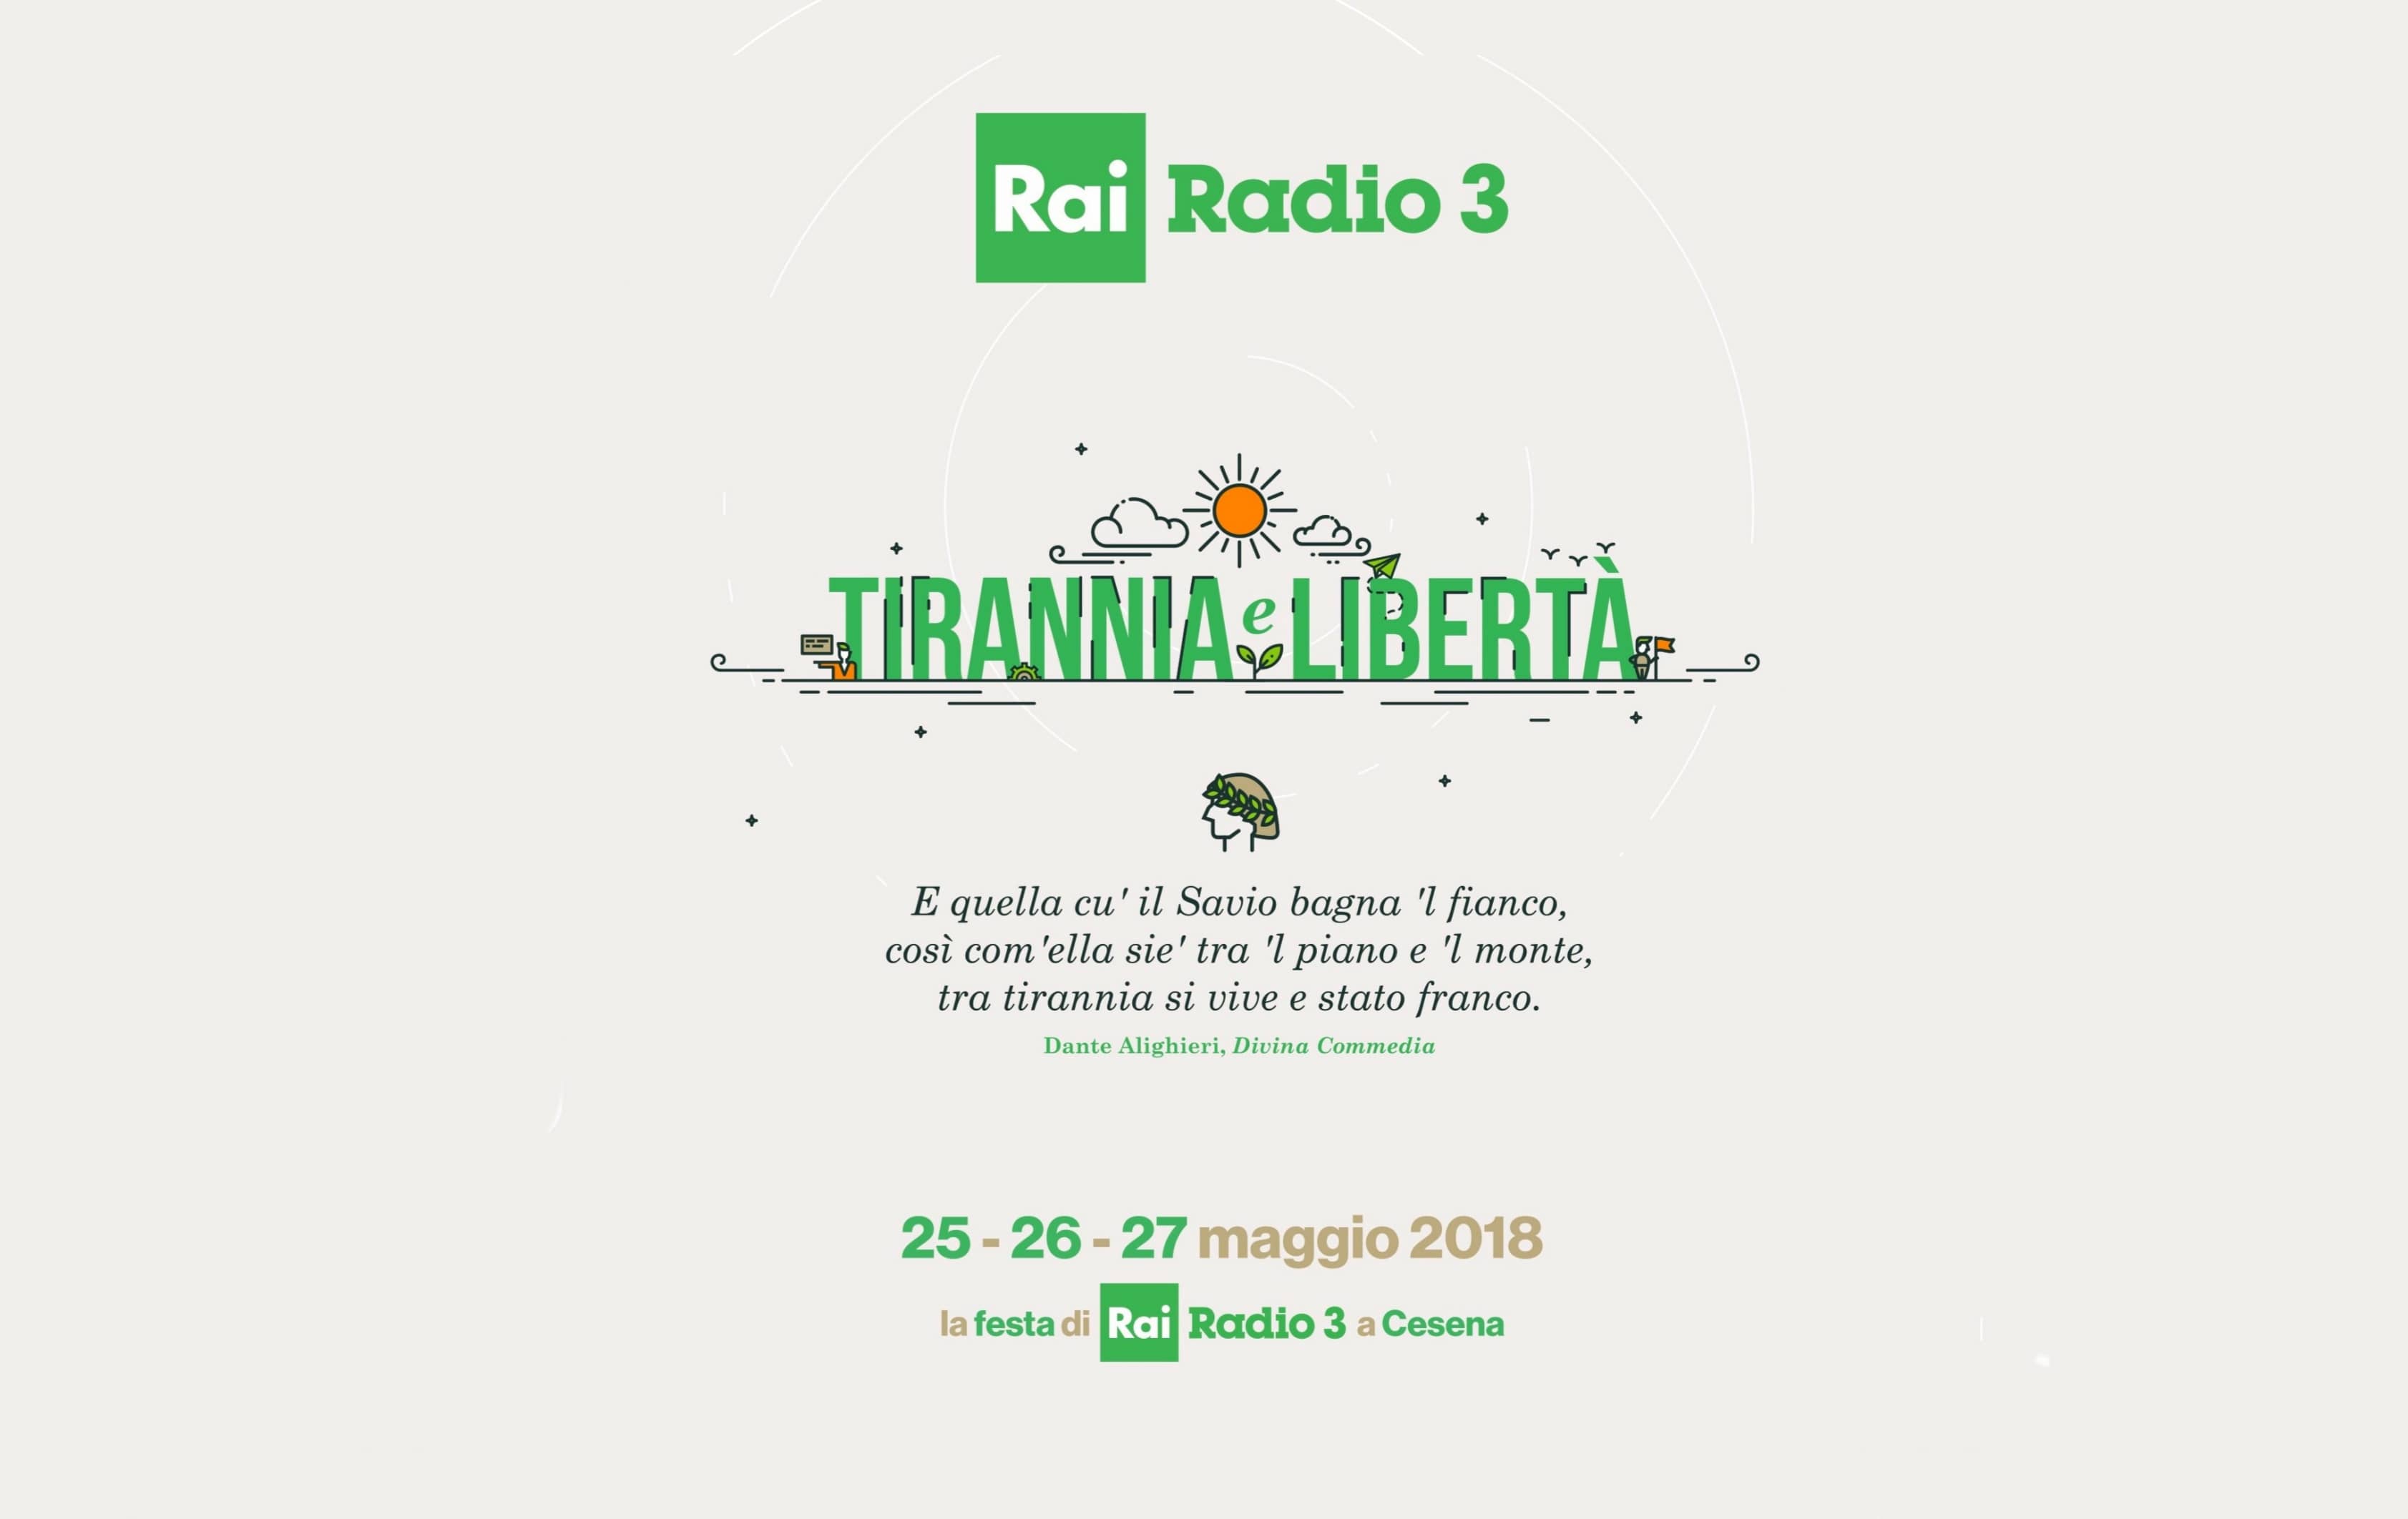 Festa di Rai Radio 3 a Cesena dal 25 al 27 maggio